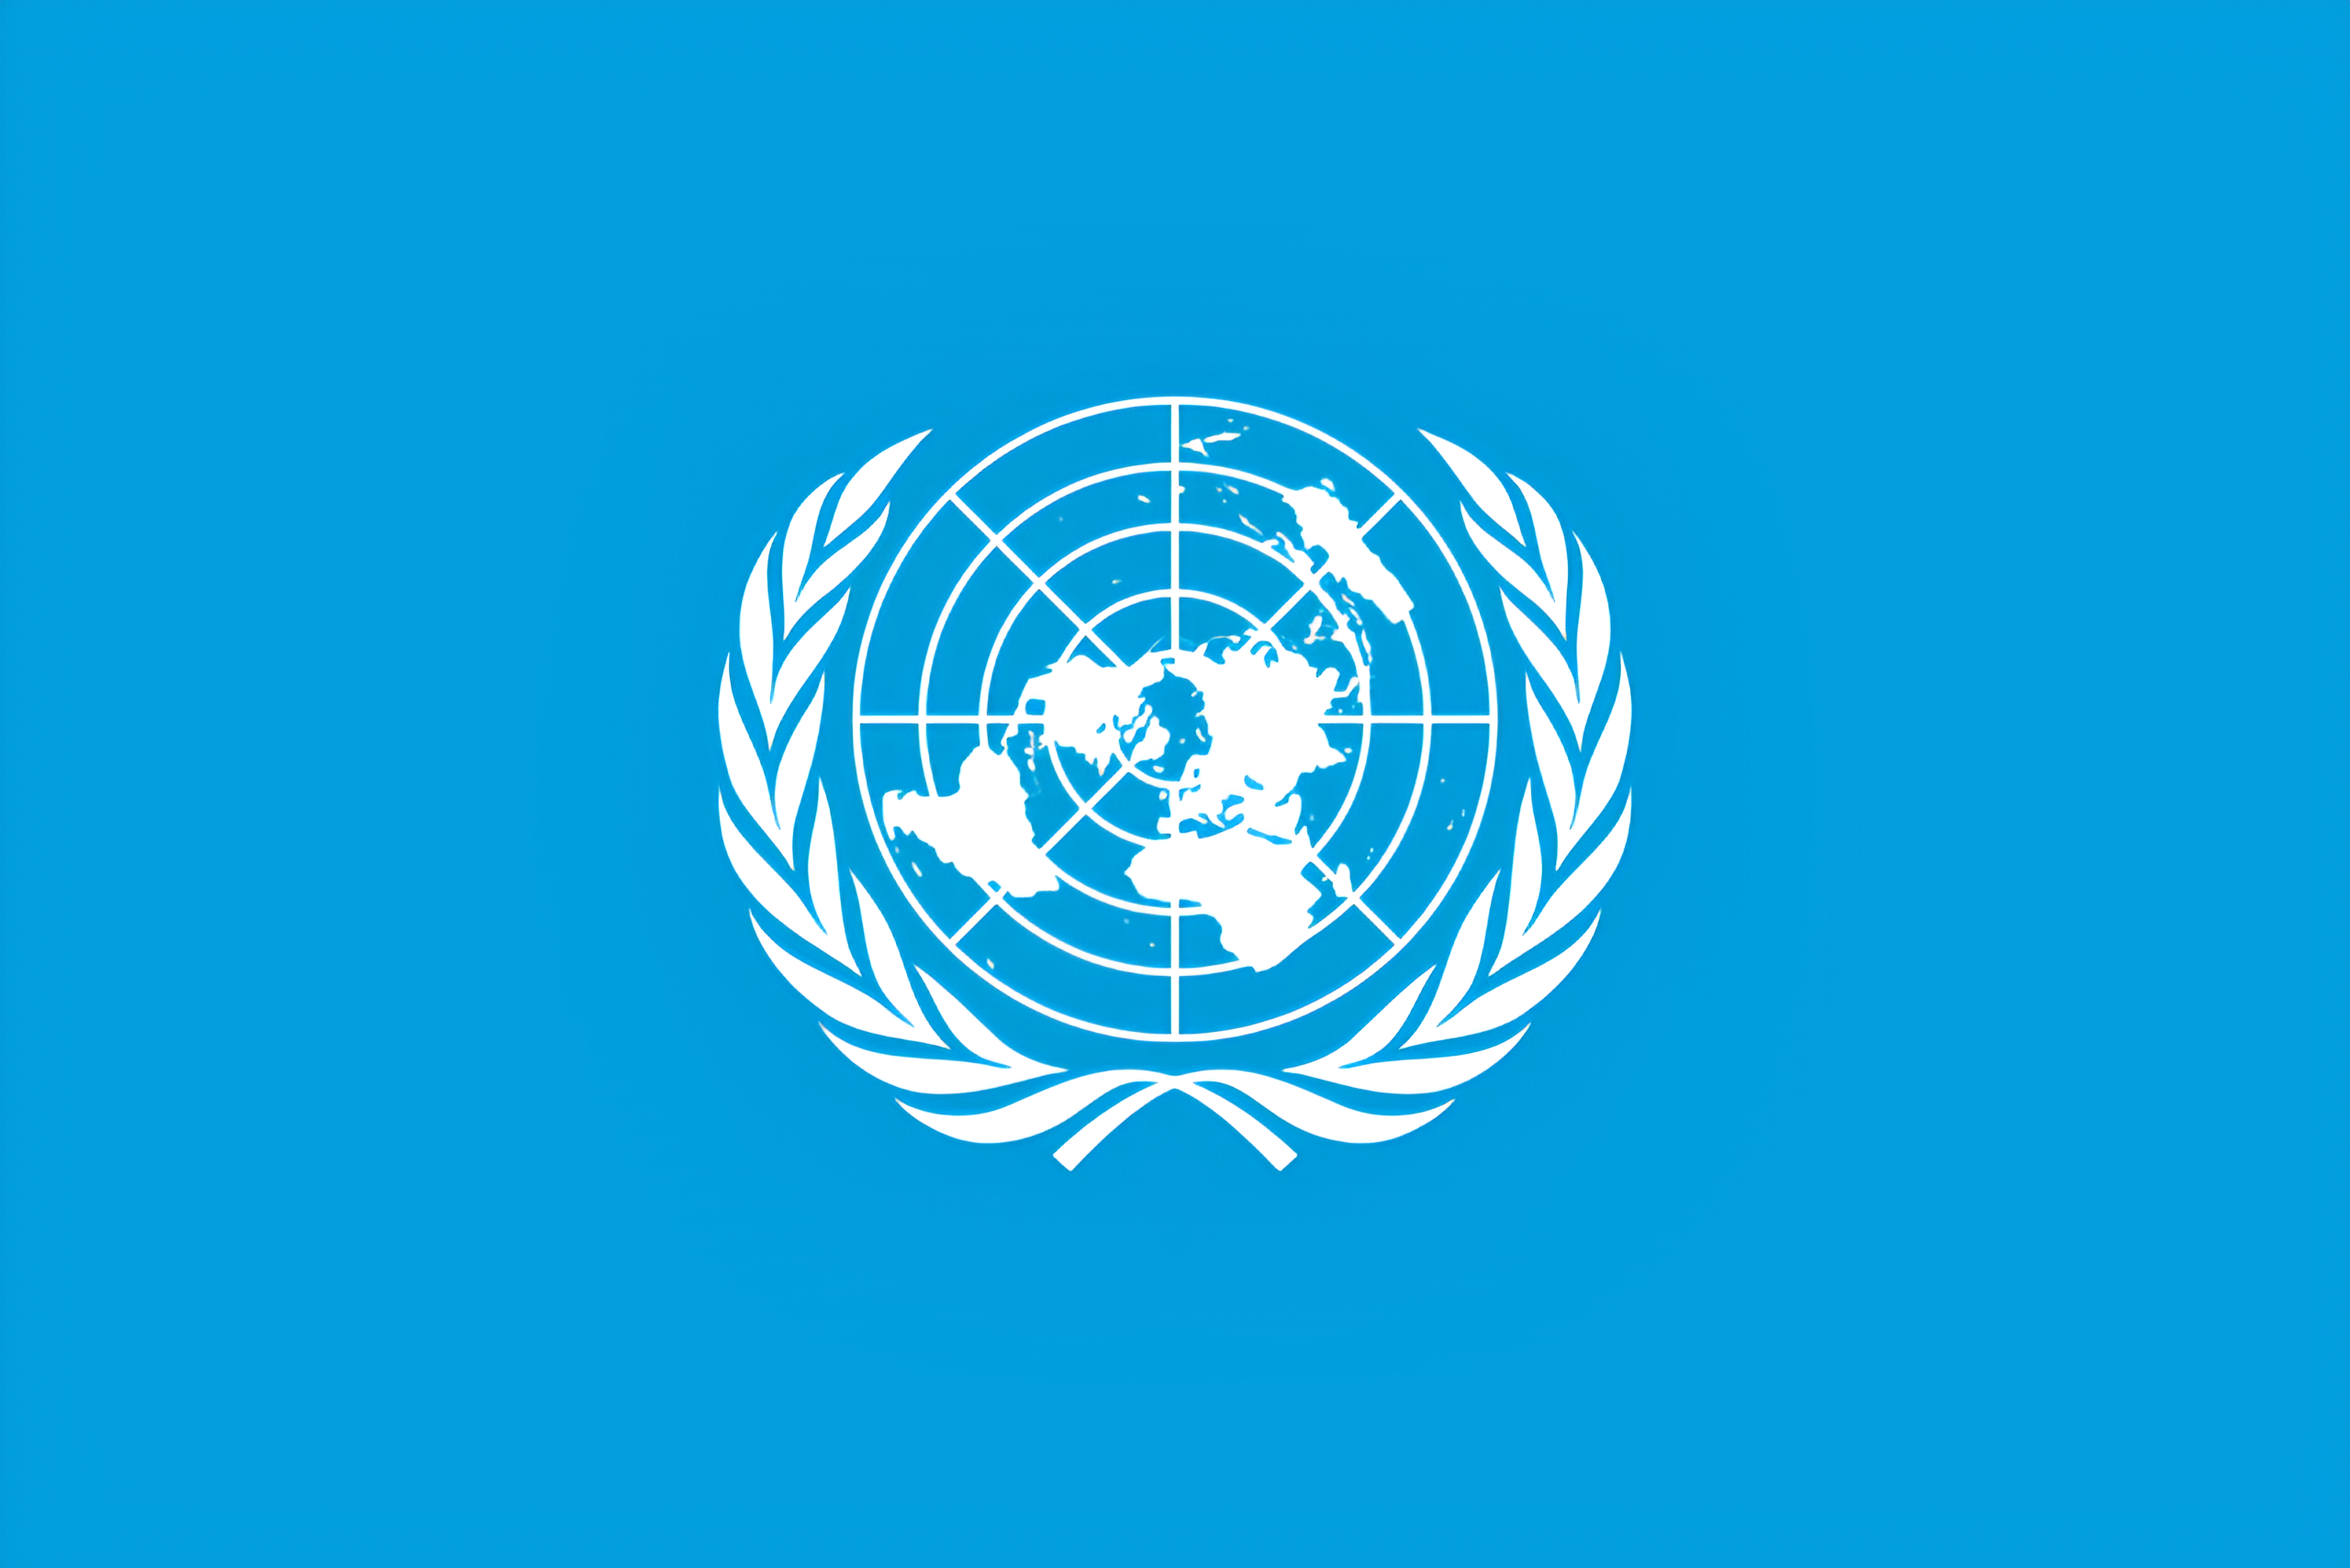 Birleşmiş Milletler'den Özgürlük Filosu'na destek açıklaması